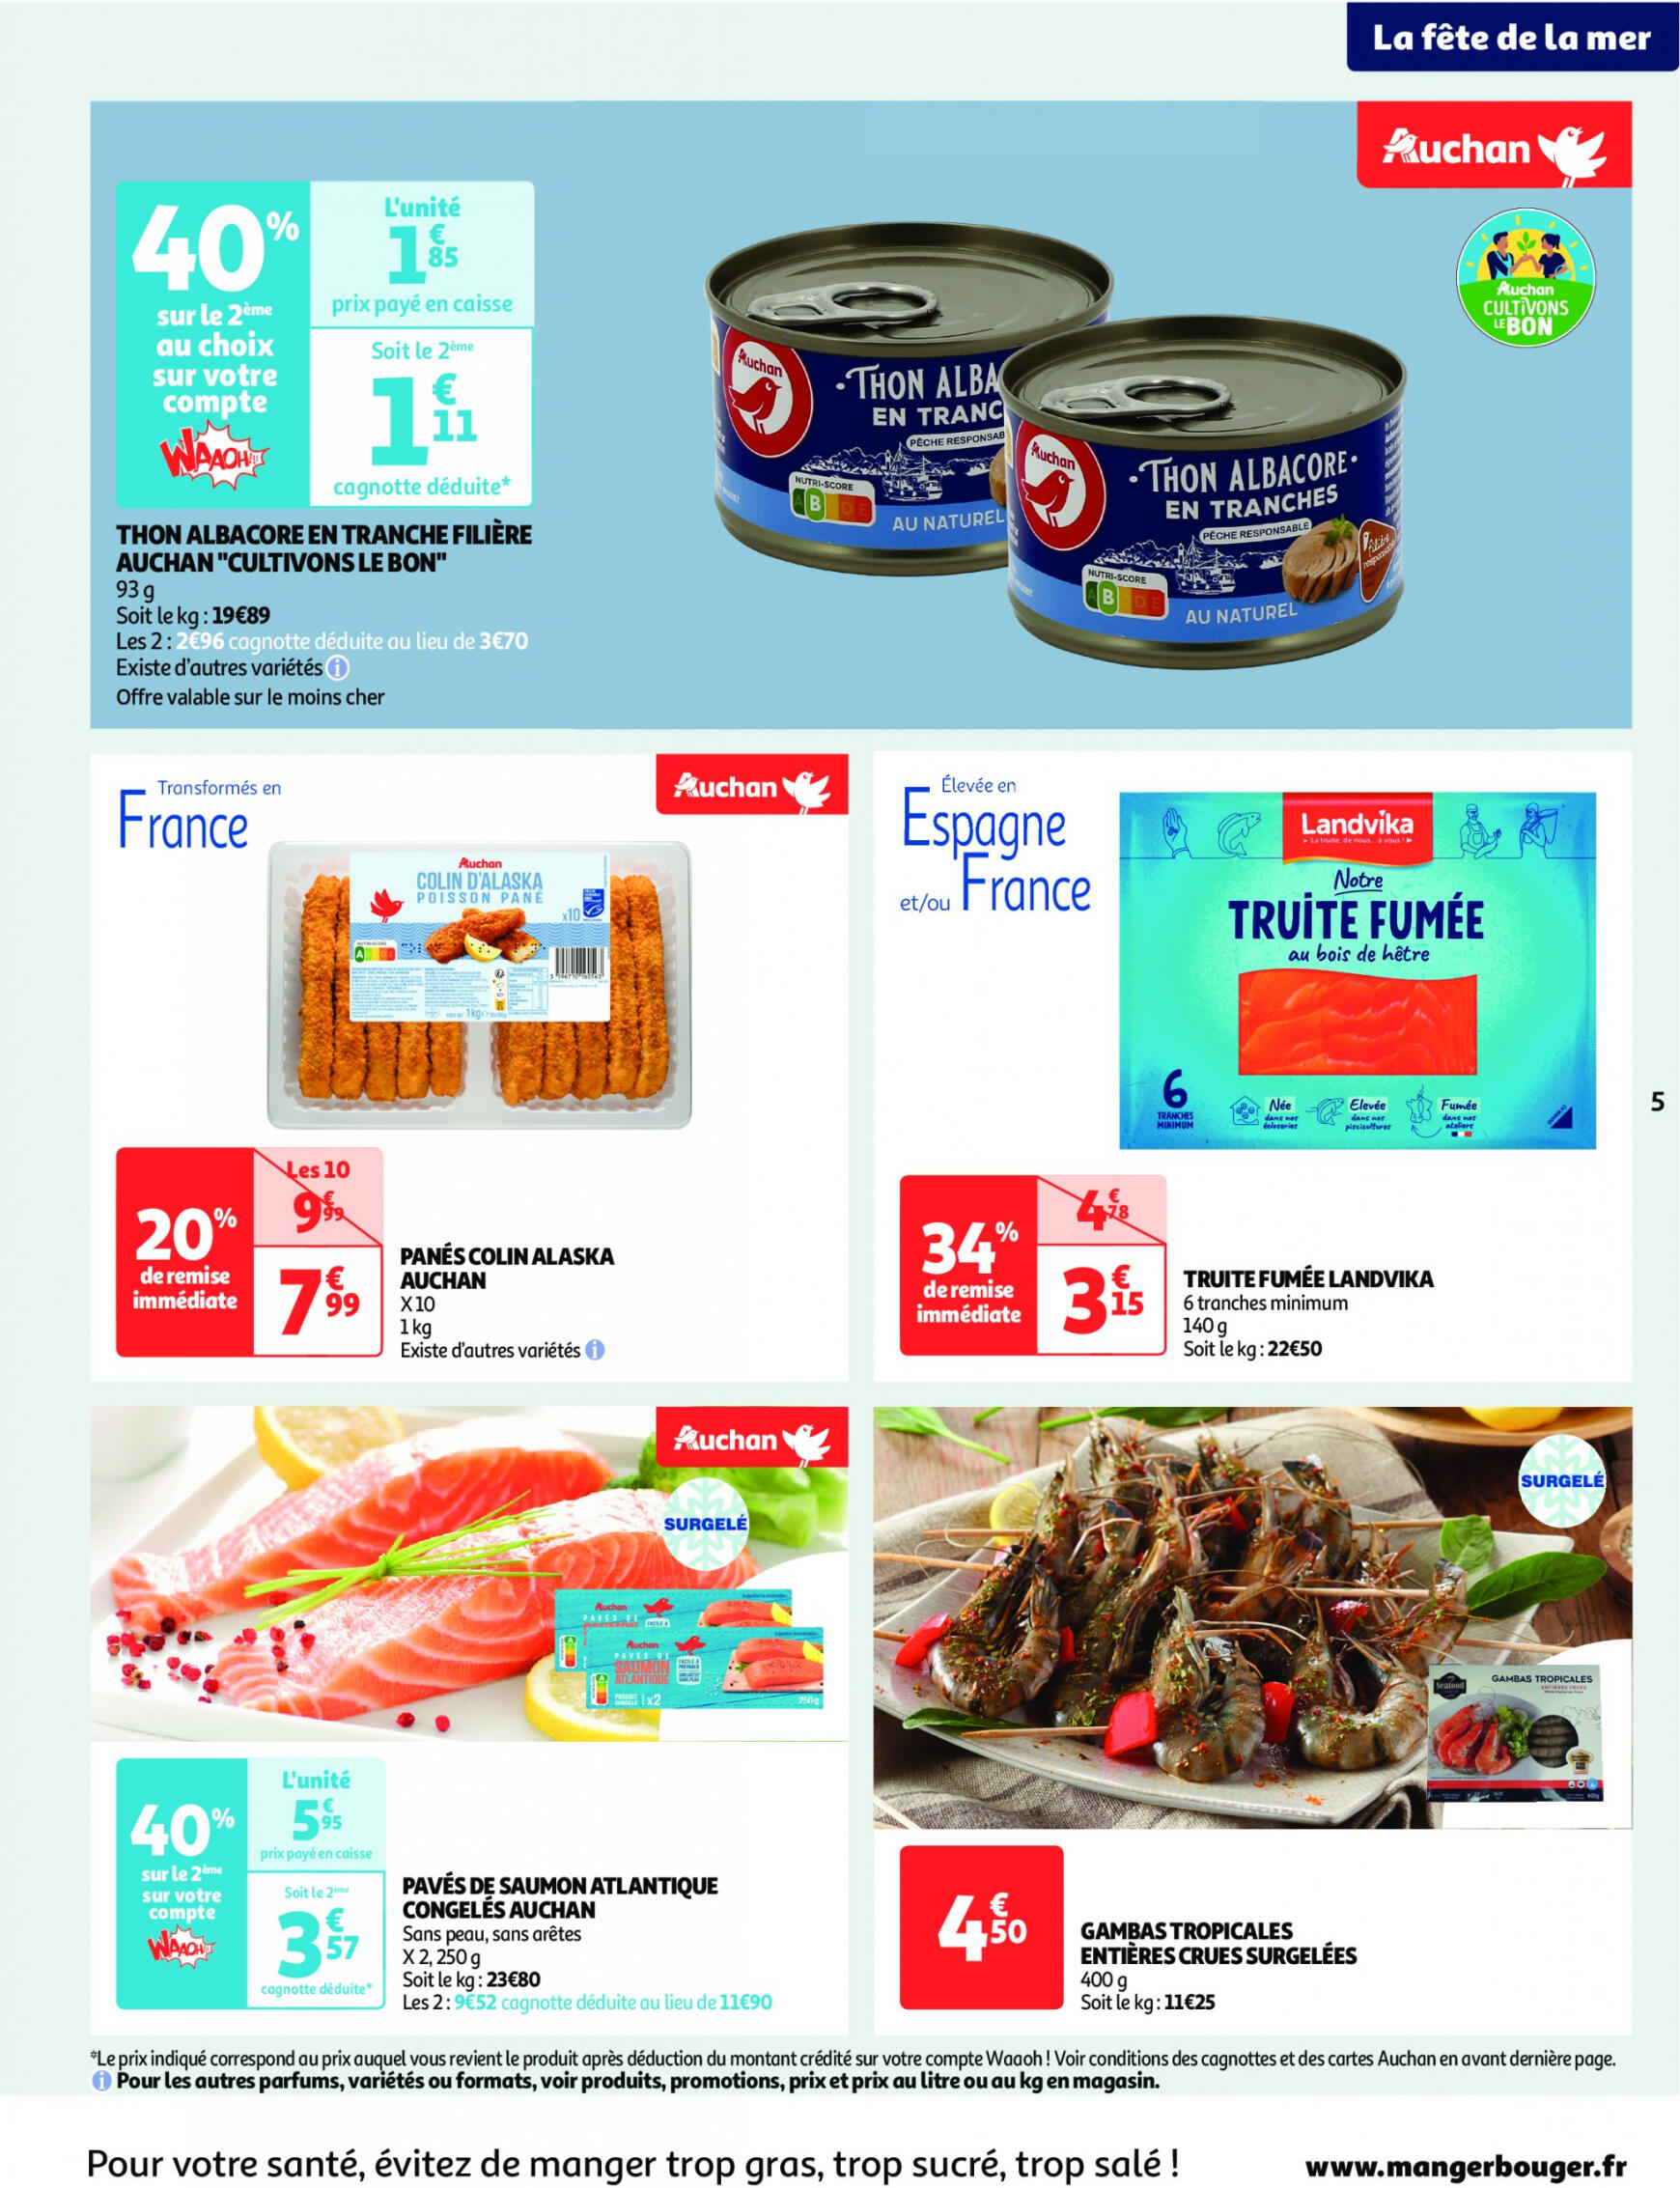 auchan - Auchan - On met le turbot sur les produits de la mer folder huidig 14.05. - 19.05. - page: 5